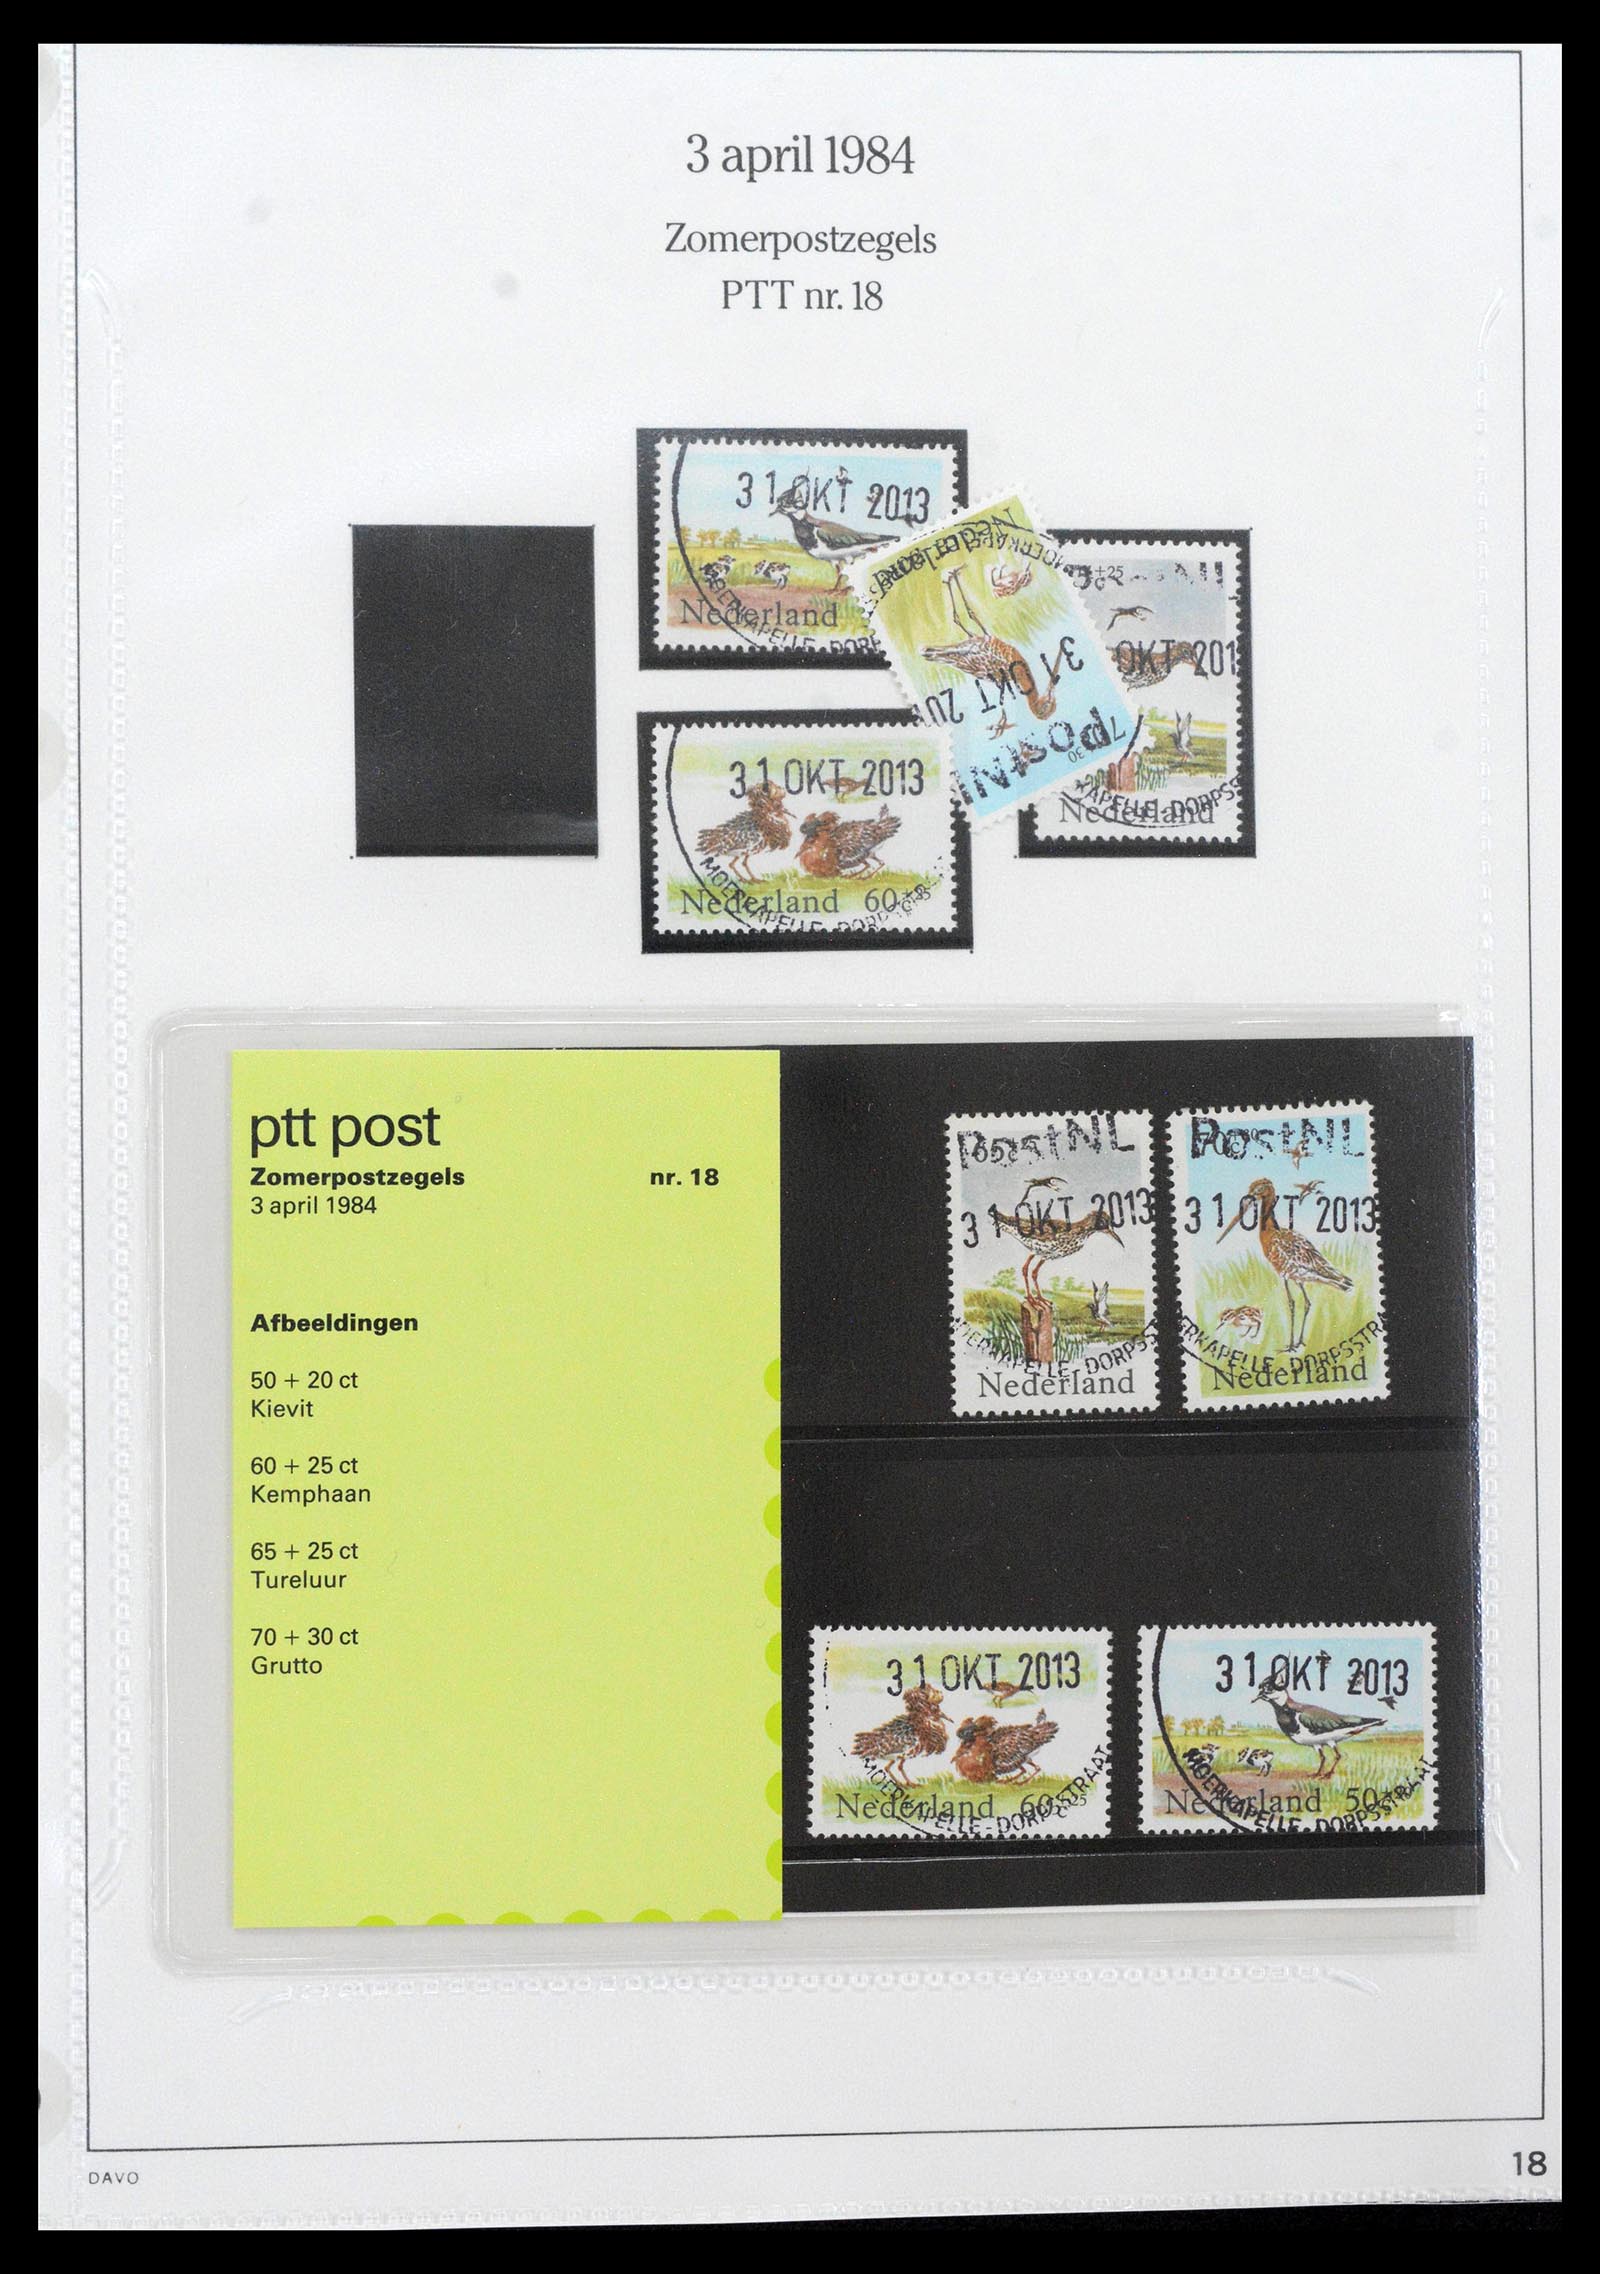 39121 0018 - Stamp collection 39121 Netherlands presentationpacks 1982-2001.